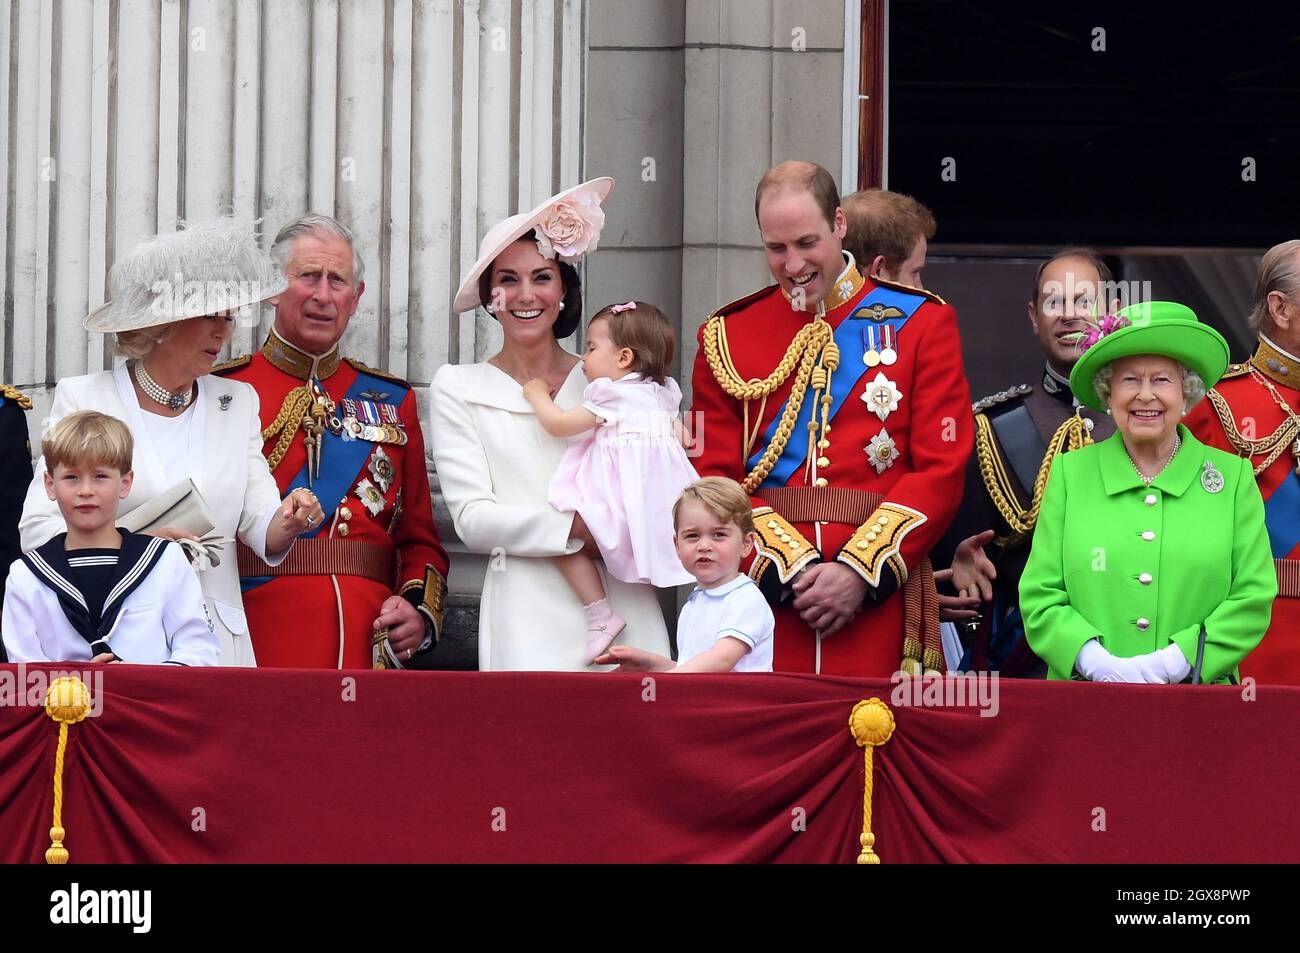 Camilla, duchesse de Cornouailles, Prince Charles, Prince de Galles, Catherine,Duchesse de Cambridge, princesse Charlotte de Cambridge, prince George, prince William, duc de Cambridge, prince Harry,La reine Elizabeth ll et le prince Philip, duc d'Édimbourg, se tiennent sur le balcon du palais de Buckingham à la suite de la cérémonie de Trooping de la couleur à Londres, qui marque le 90e anniversaire officiel de la reine le 11 juin 2016 Banque D'Images